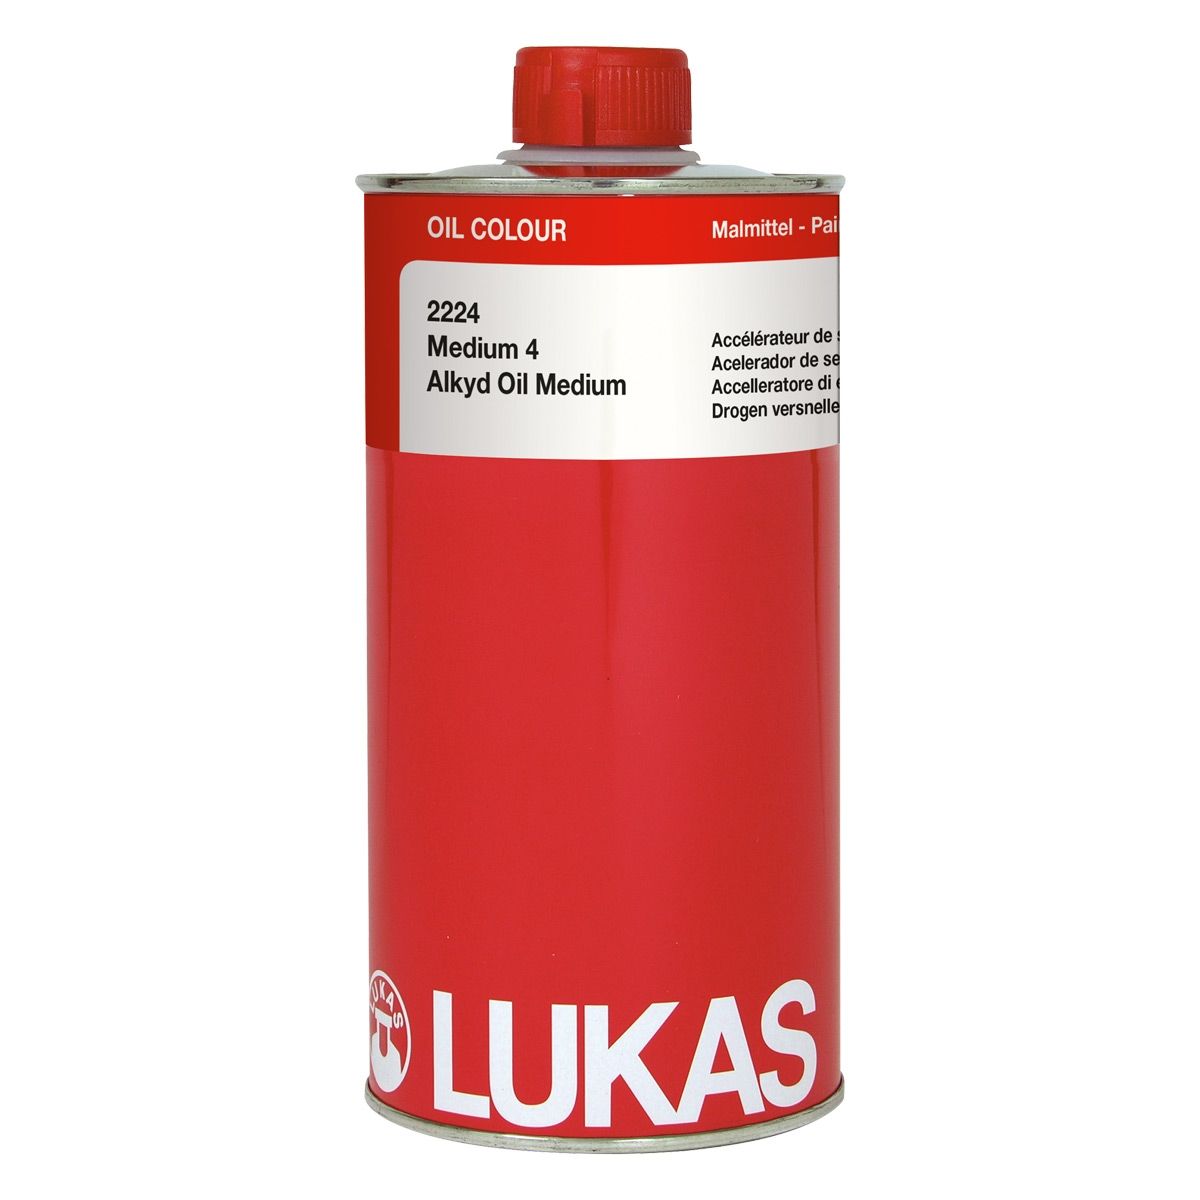 LUKAS Alkyd Oil Medium #4